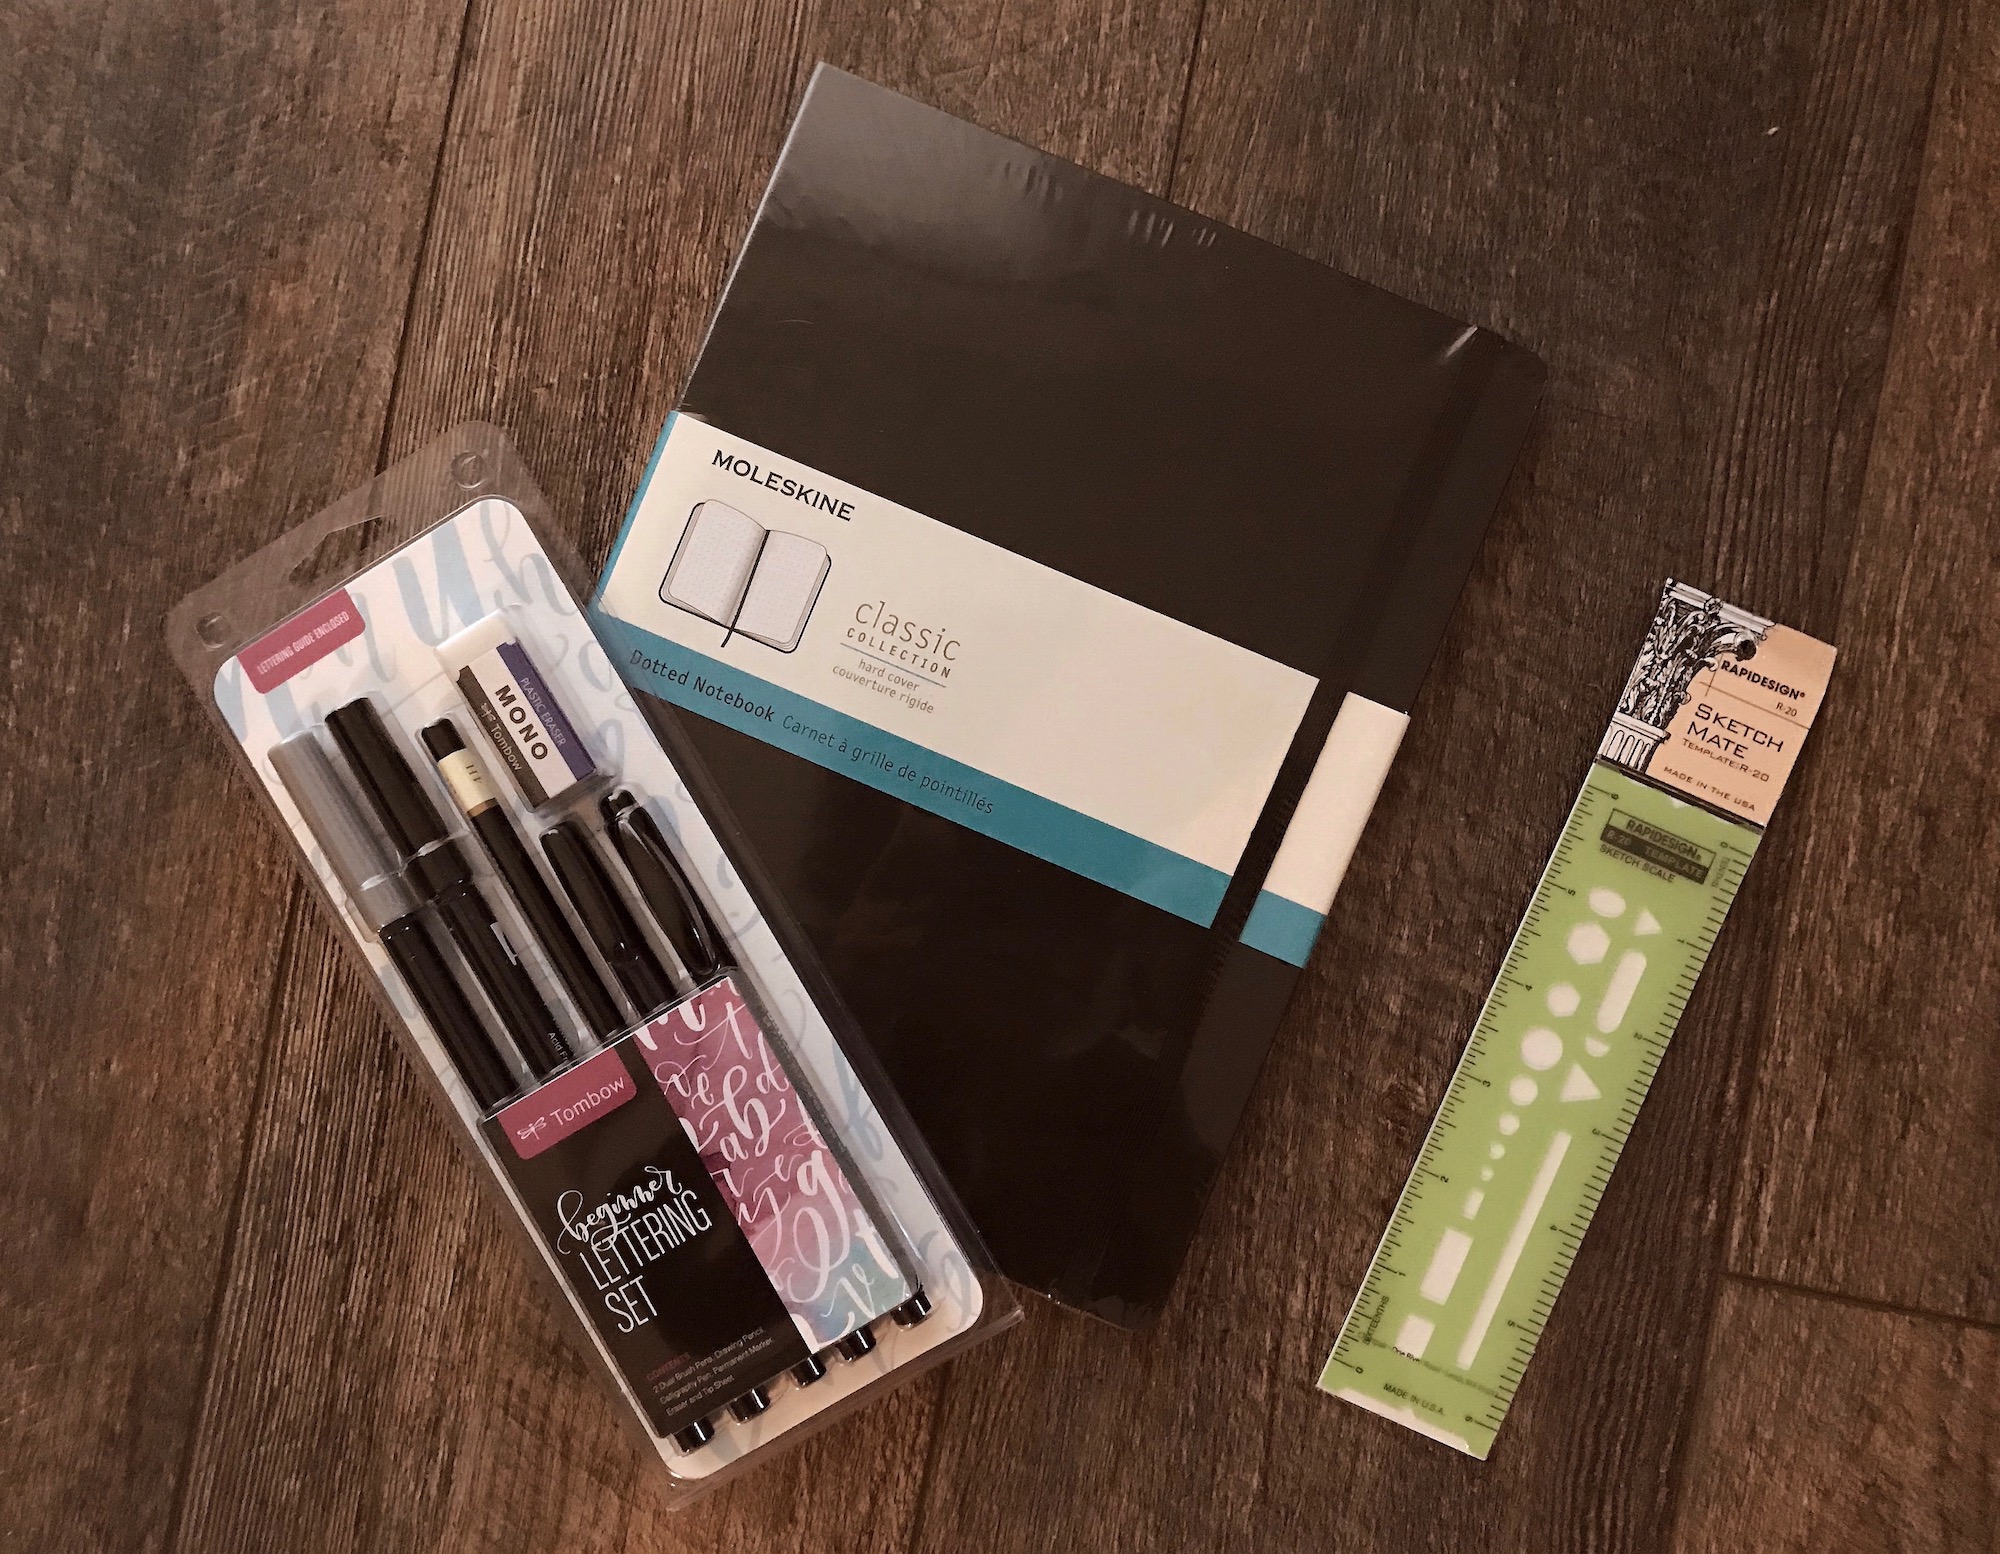 Bullet Journal Starter Kit Giveaway! — The Keen Kind